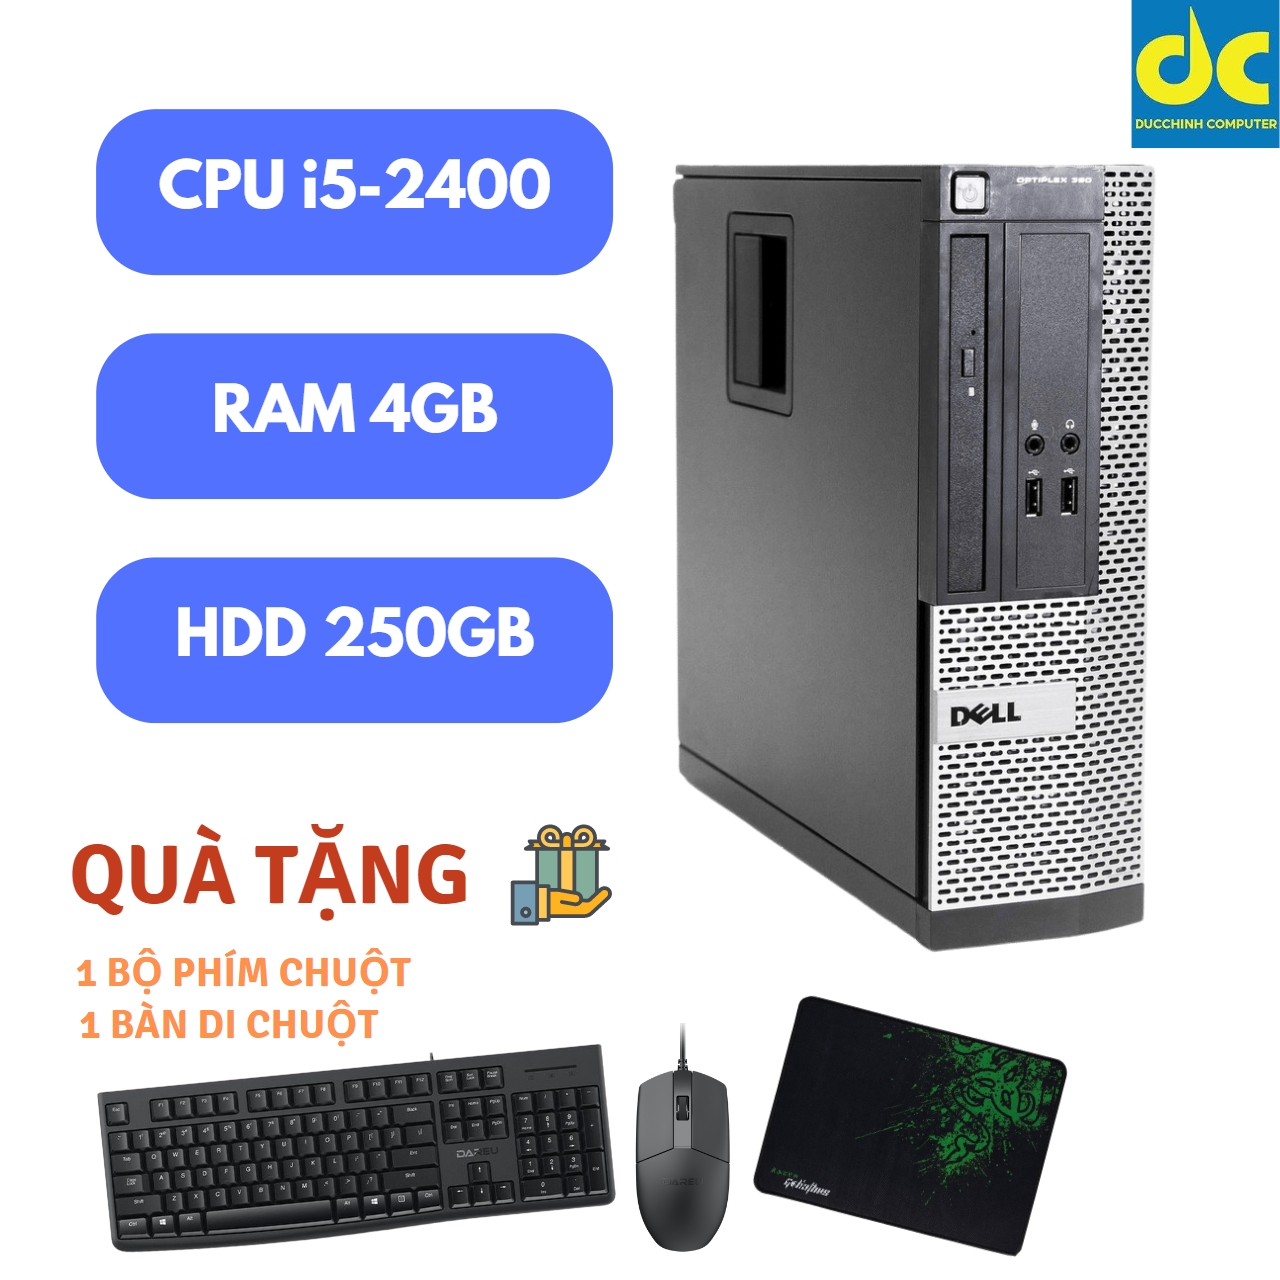 Máy tính Dell Optiplex 390/790/990 SFF, Chip i5-2400, Ram 4GB, HDD 250GB, DVD